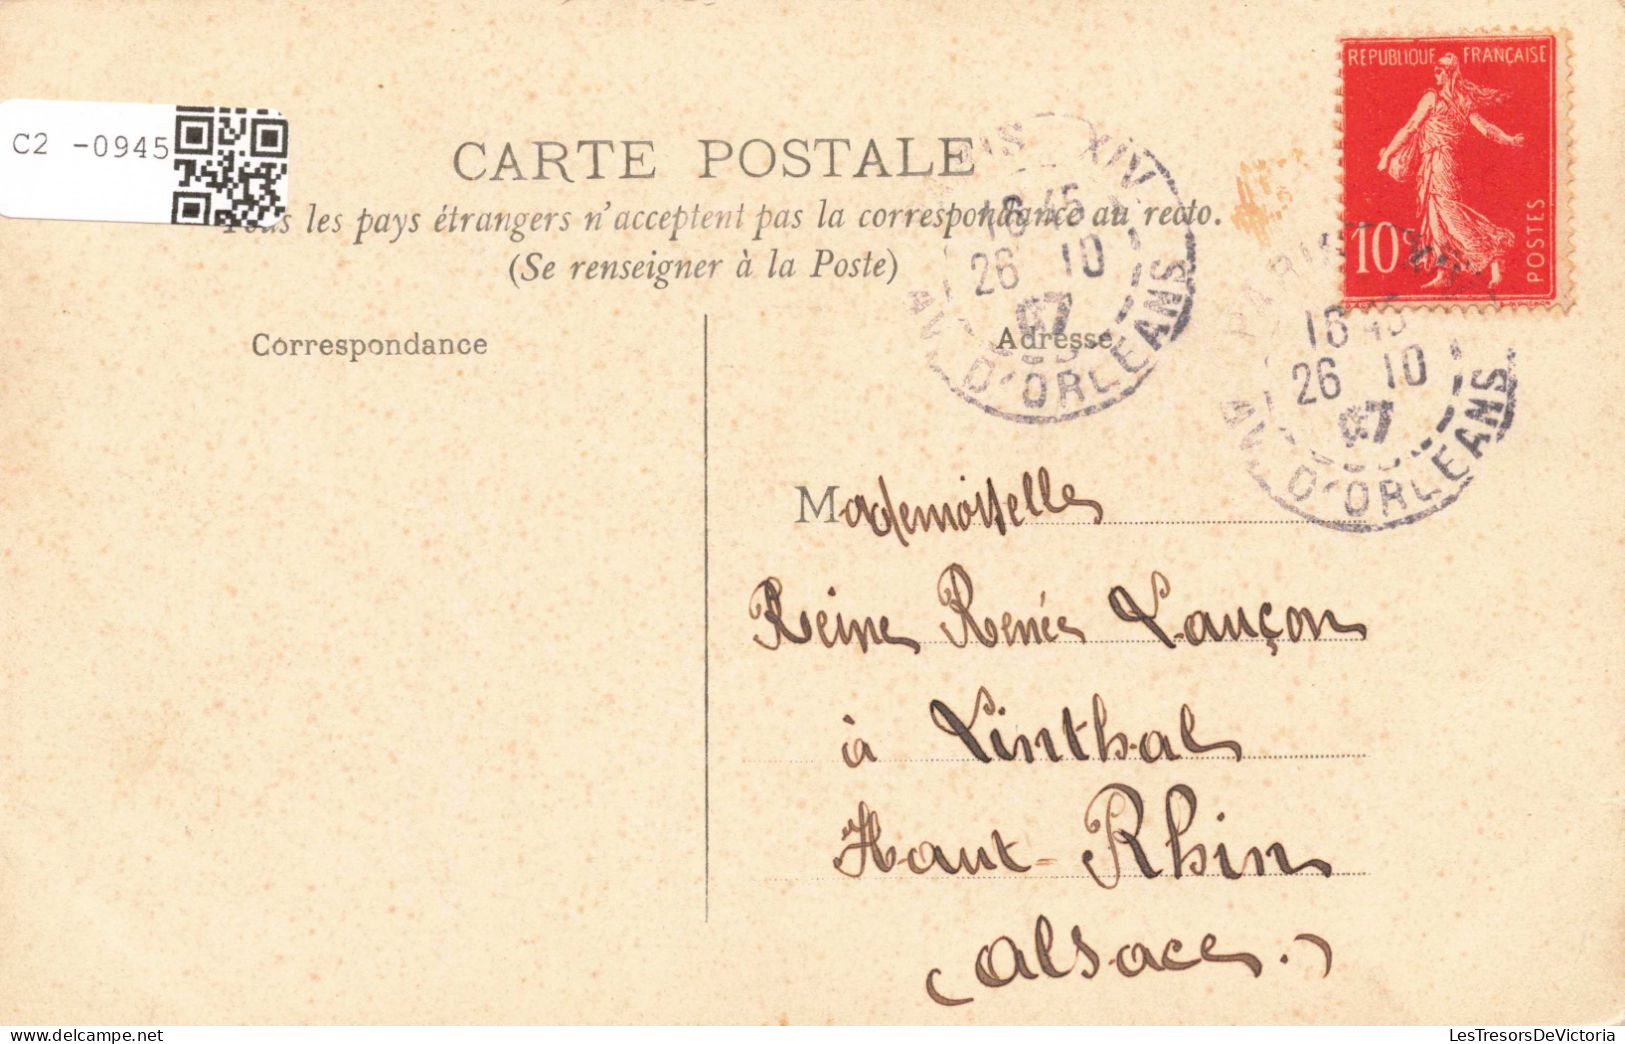 FRANCE - 75 - Paris - Palais De Justice Et Conciergerie - Carte Postale Ancienne - Sonstige Sehenswürdigkeiten